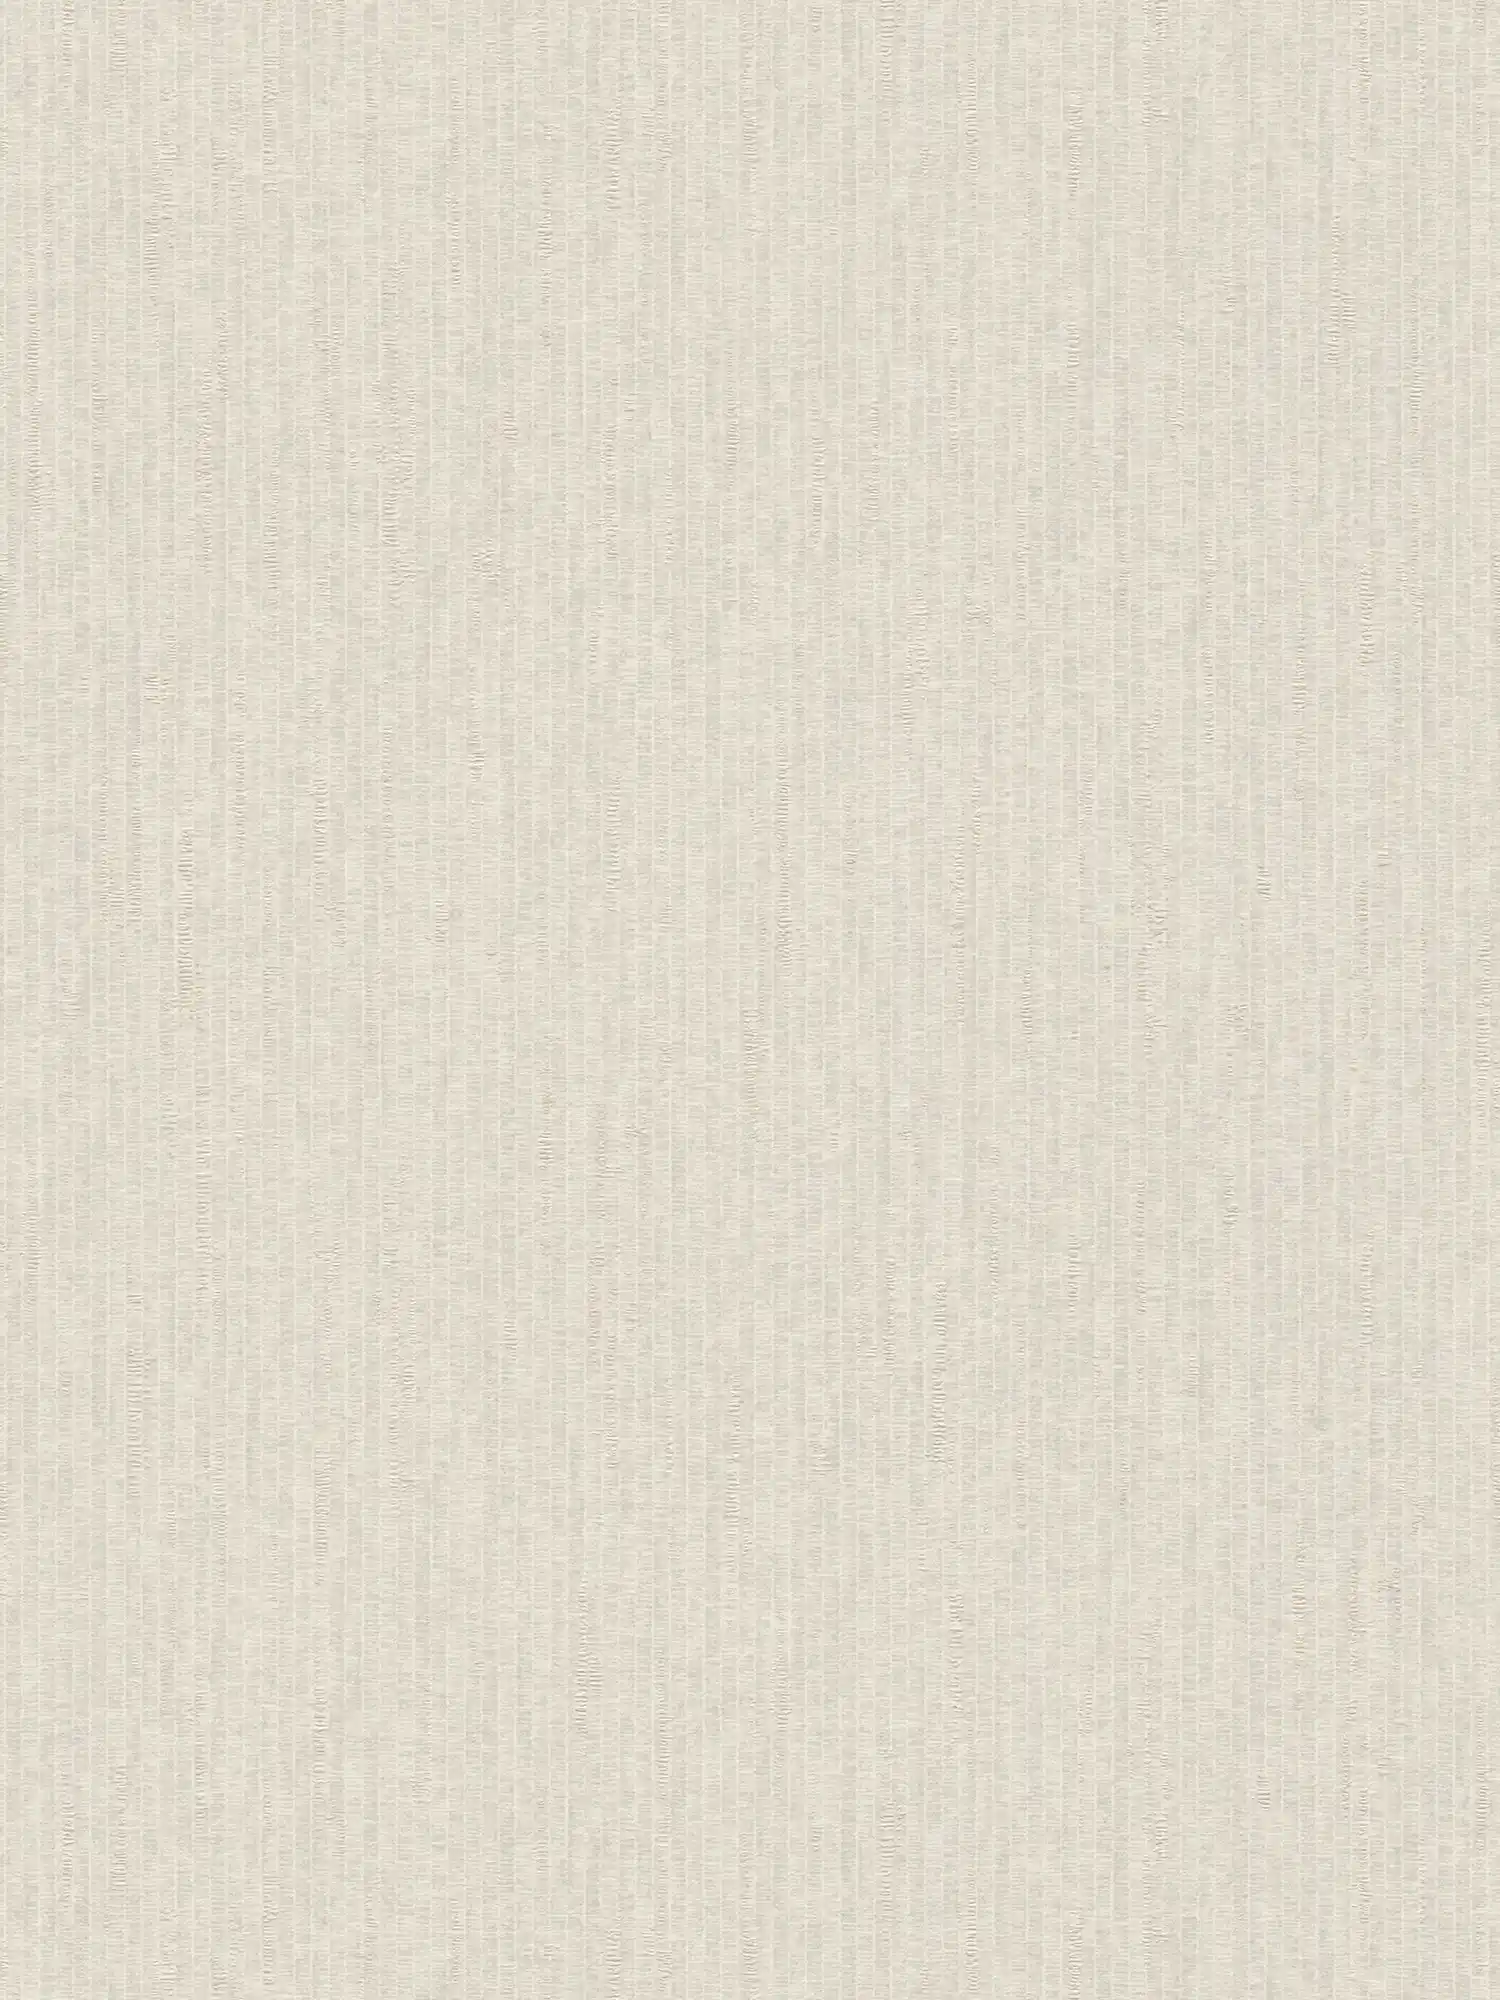 Crèmewit behang met glanseffect en textiellook - wit
